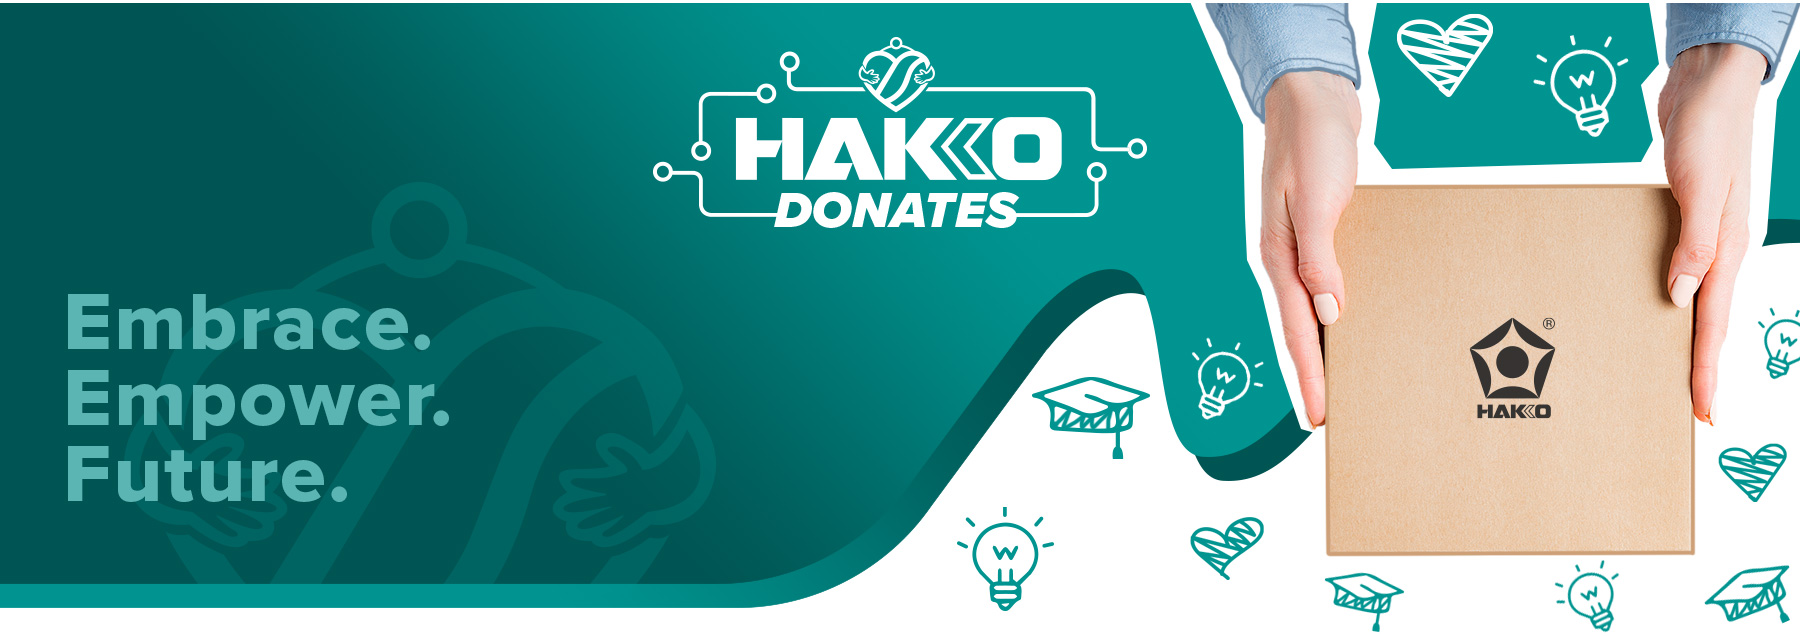 HAKKO-FOUNDATION_LandingPG_03